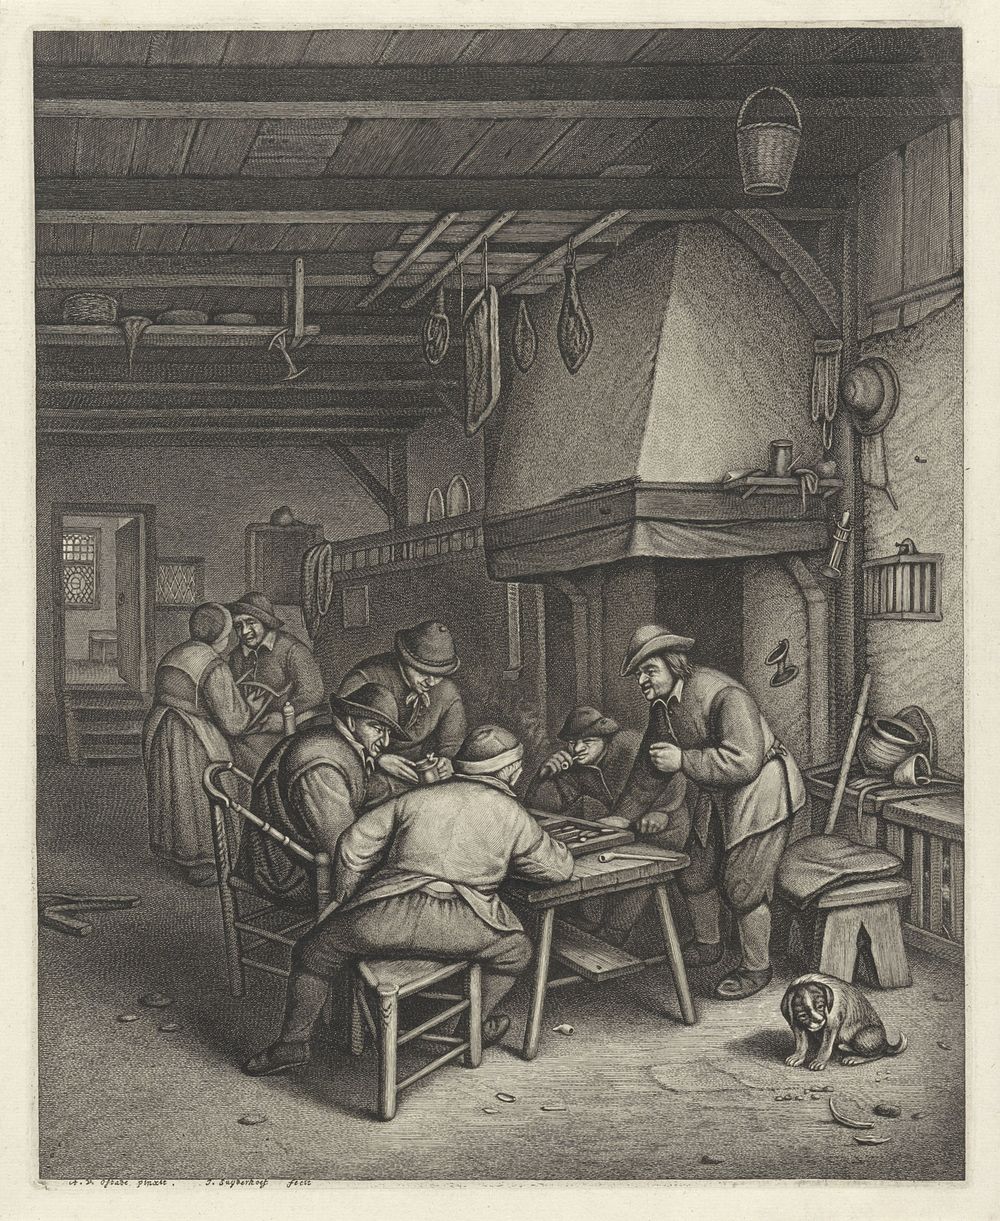 Boereninterieur met triktrakspelers (1726 - 1776) by Jonas Suyderhoef and Adriaen van Ostade